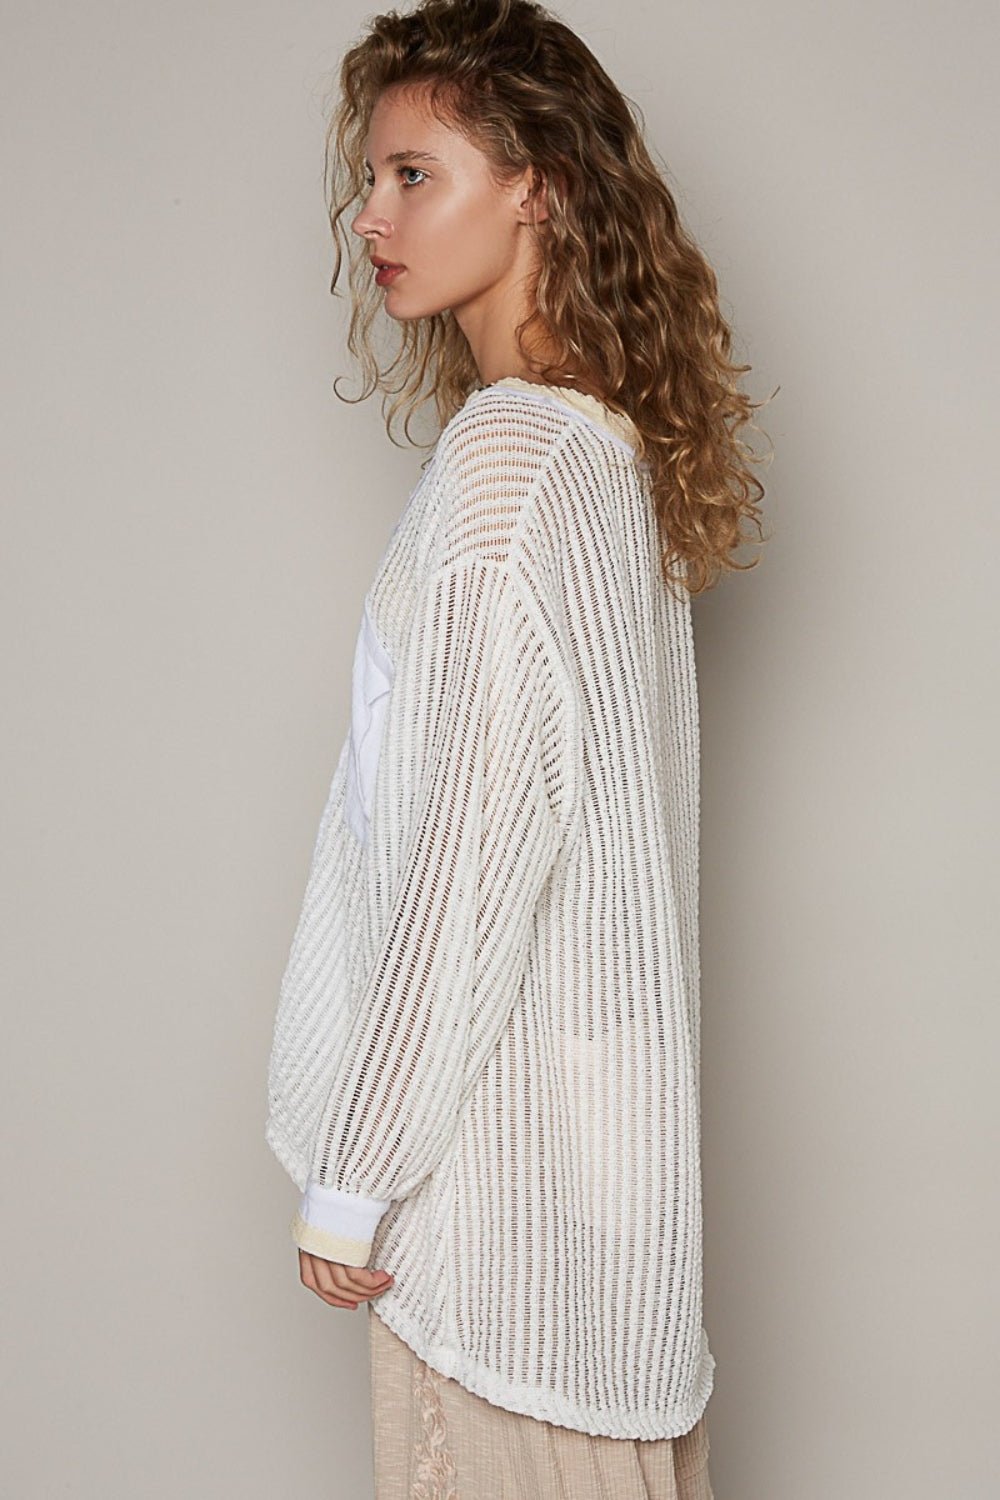 V-Neck Long Sleeve Crochet Top in Off-WhiteTopPOL